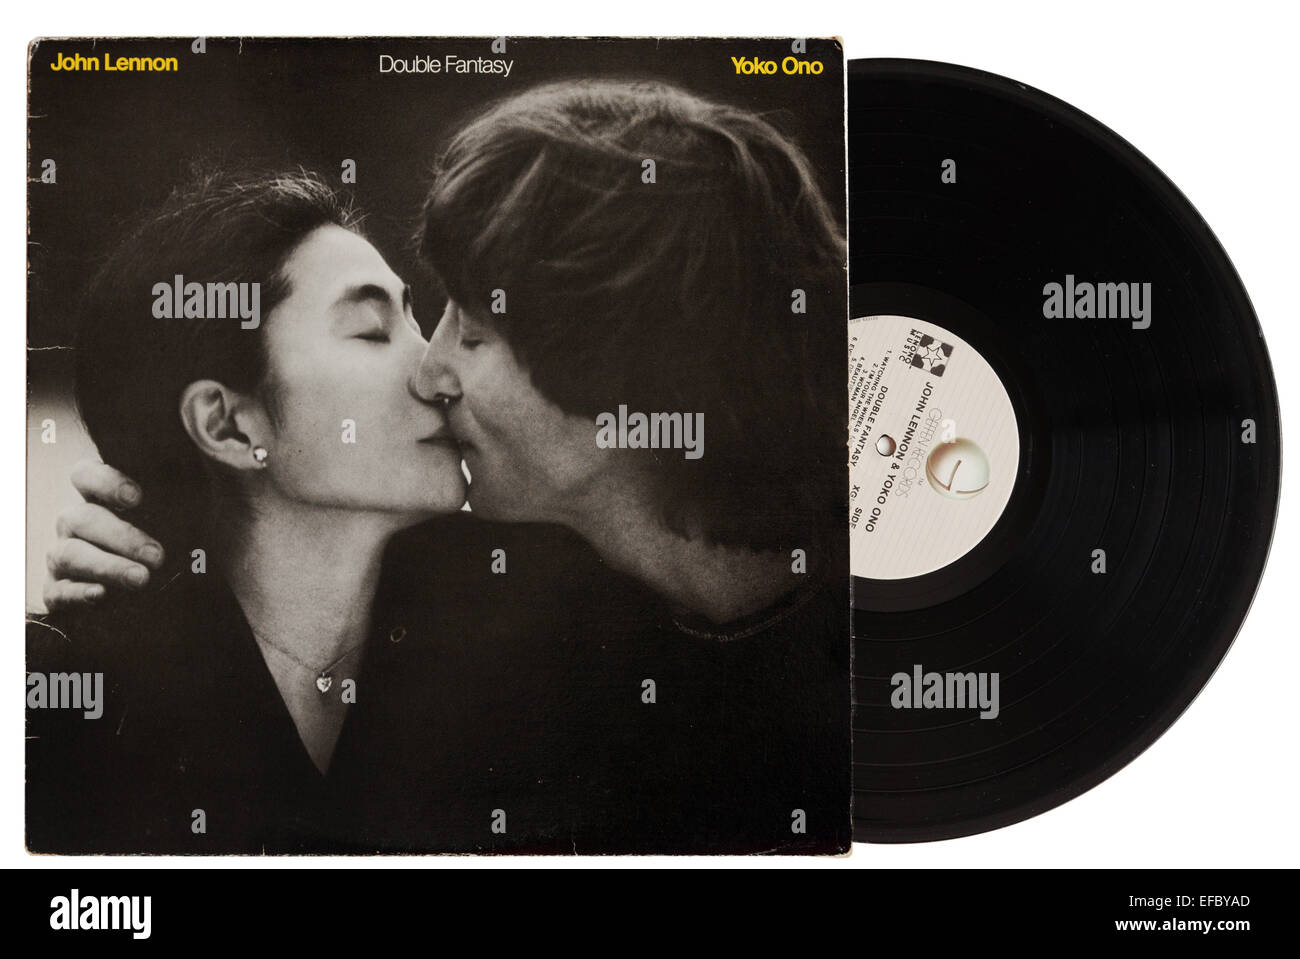 Album Double Fantasy par John Lennon et Yoko Ono. C'est au cours de l'enregistrement de cet album que John Lennon a été assassiné Banque D'Images